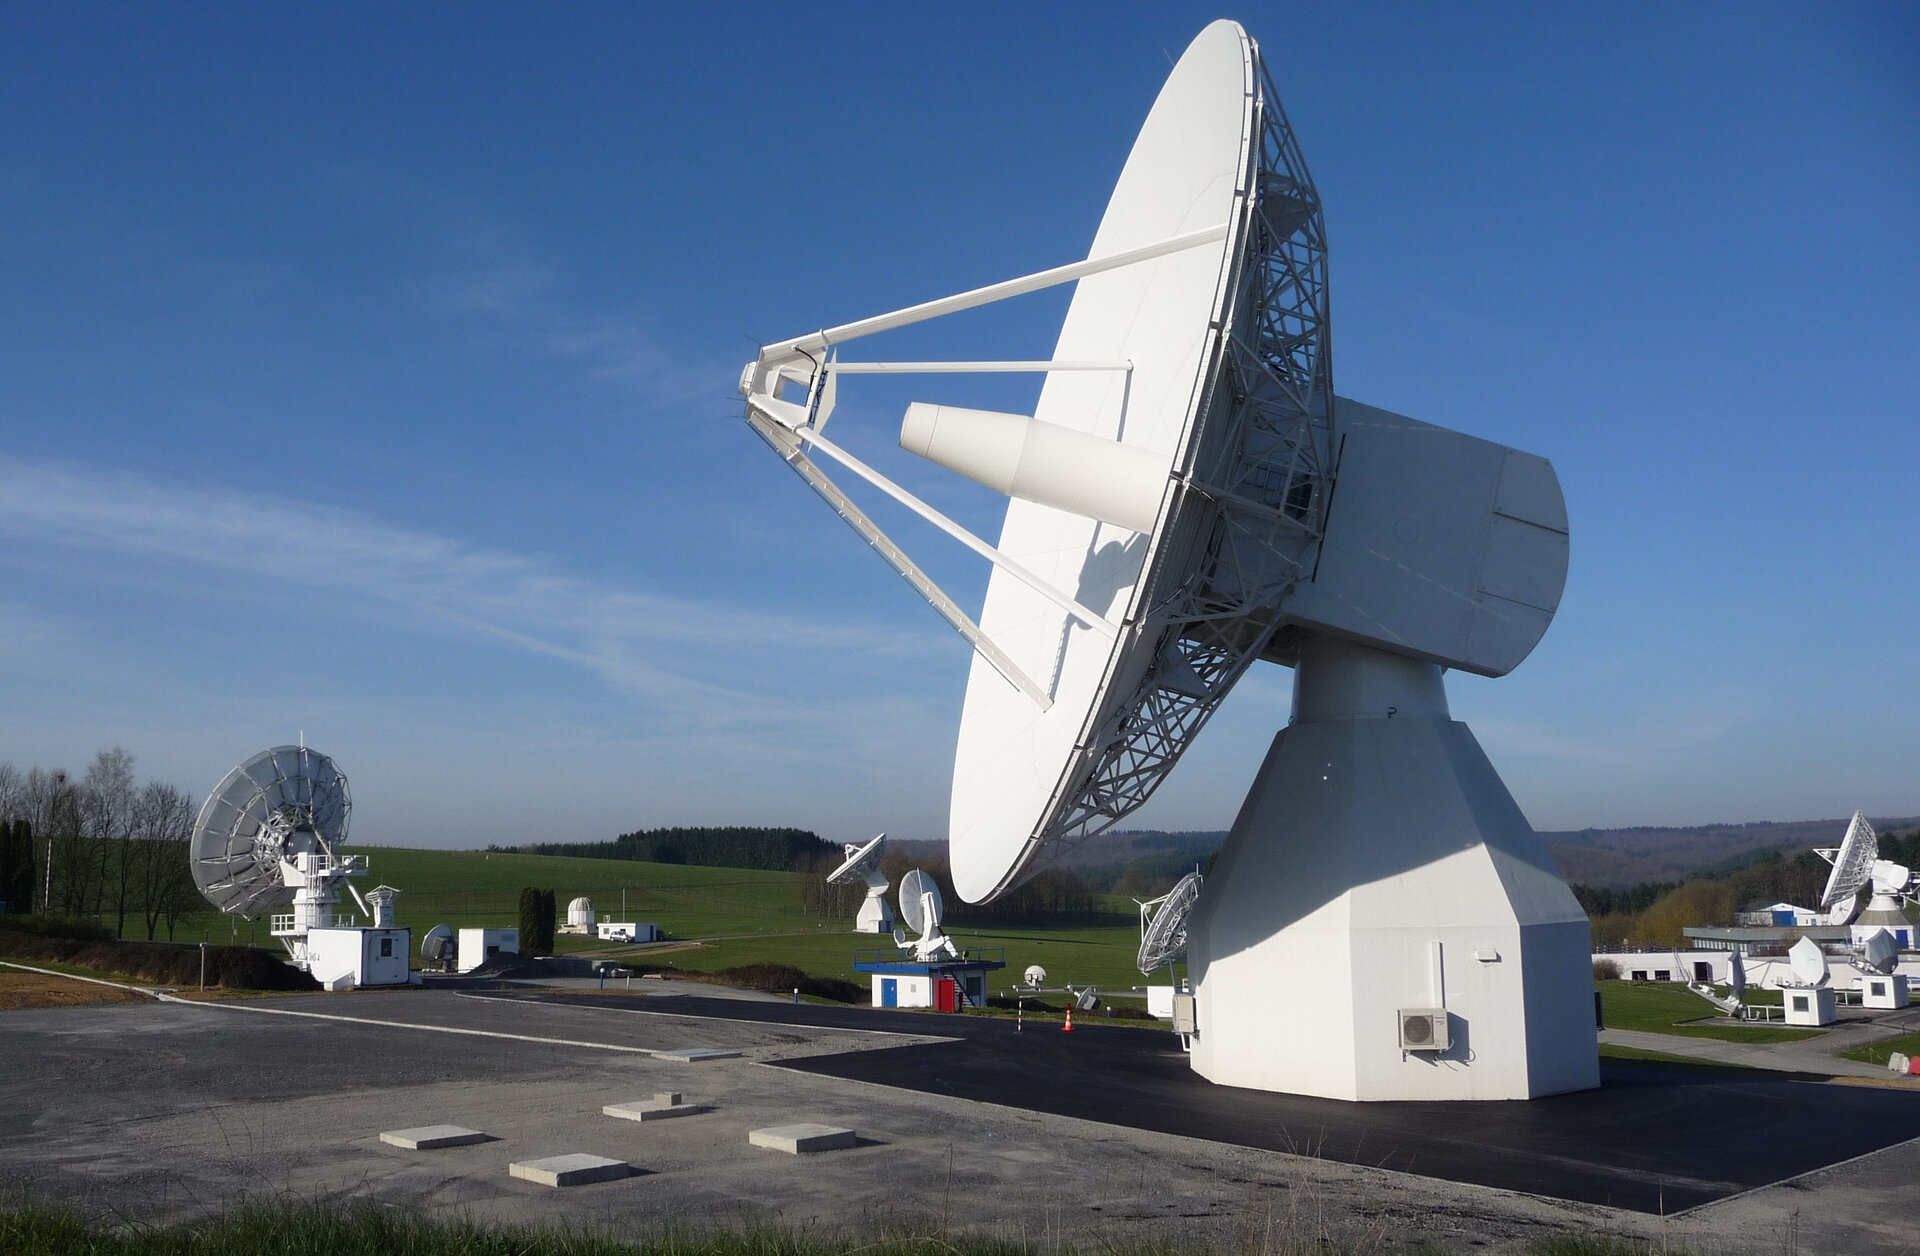 Propriété de la Commission, la grande parabole de la station ESA de Redu pour les tests Galileo en bande L